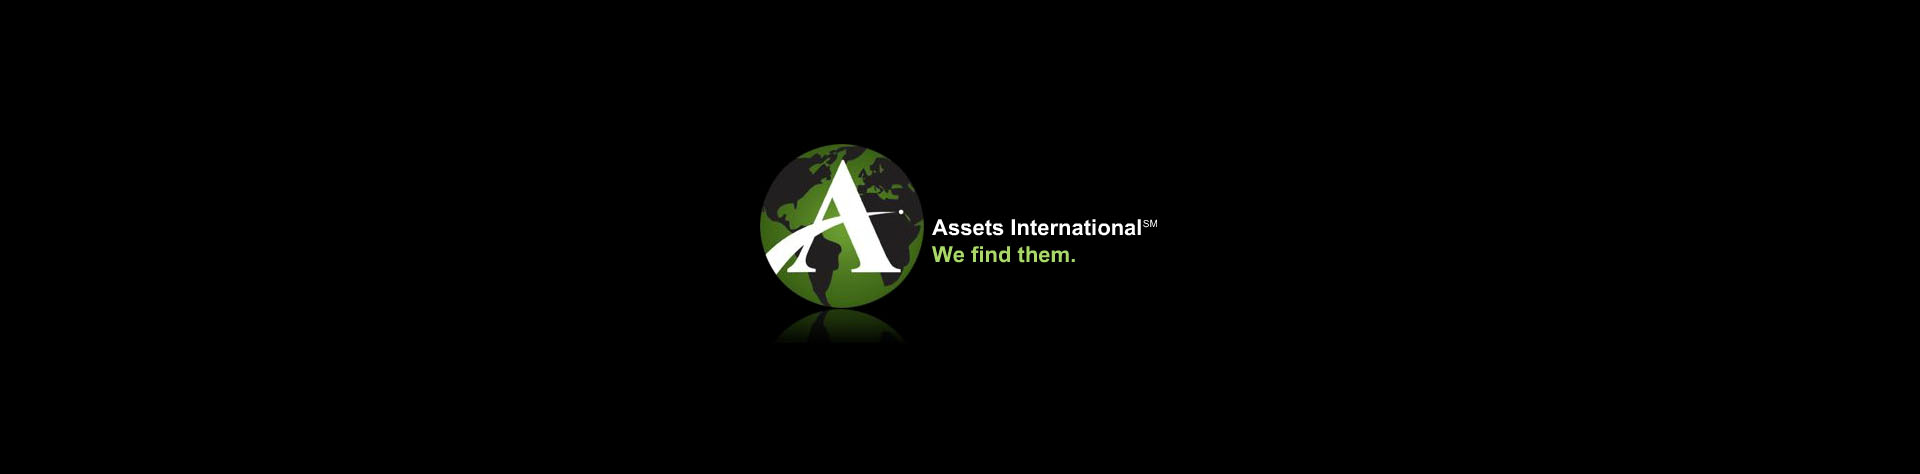 Assets International | We find them